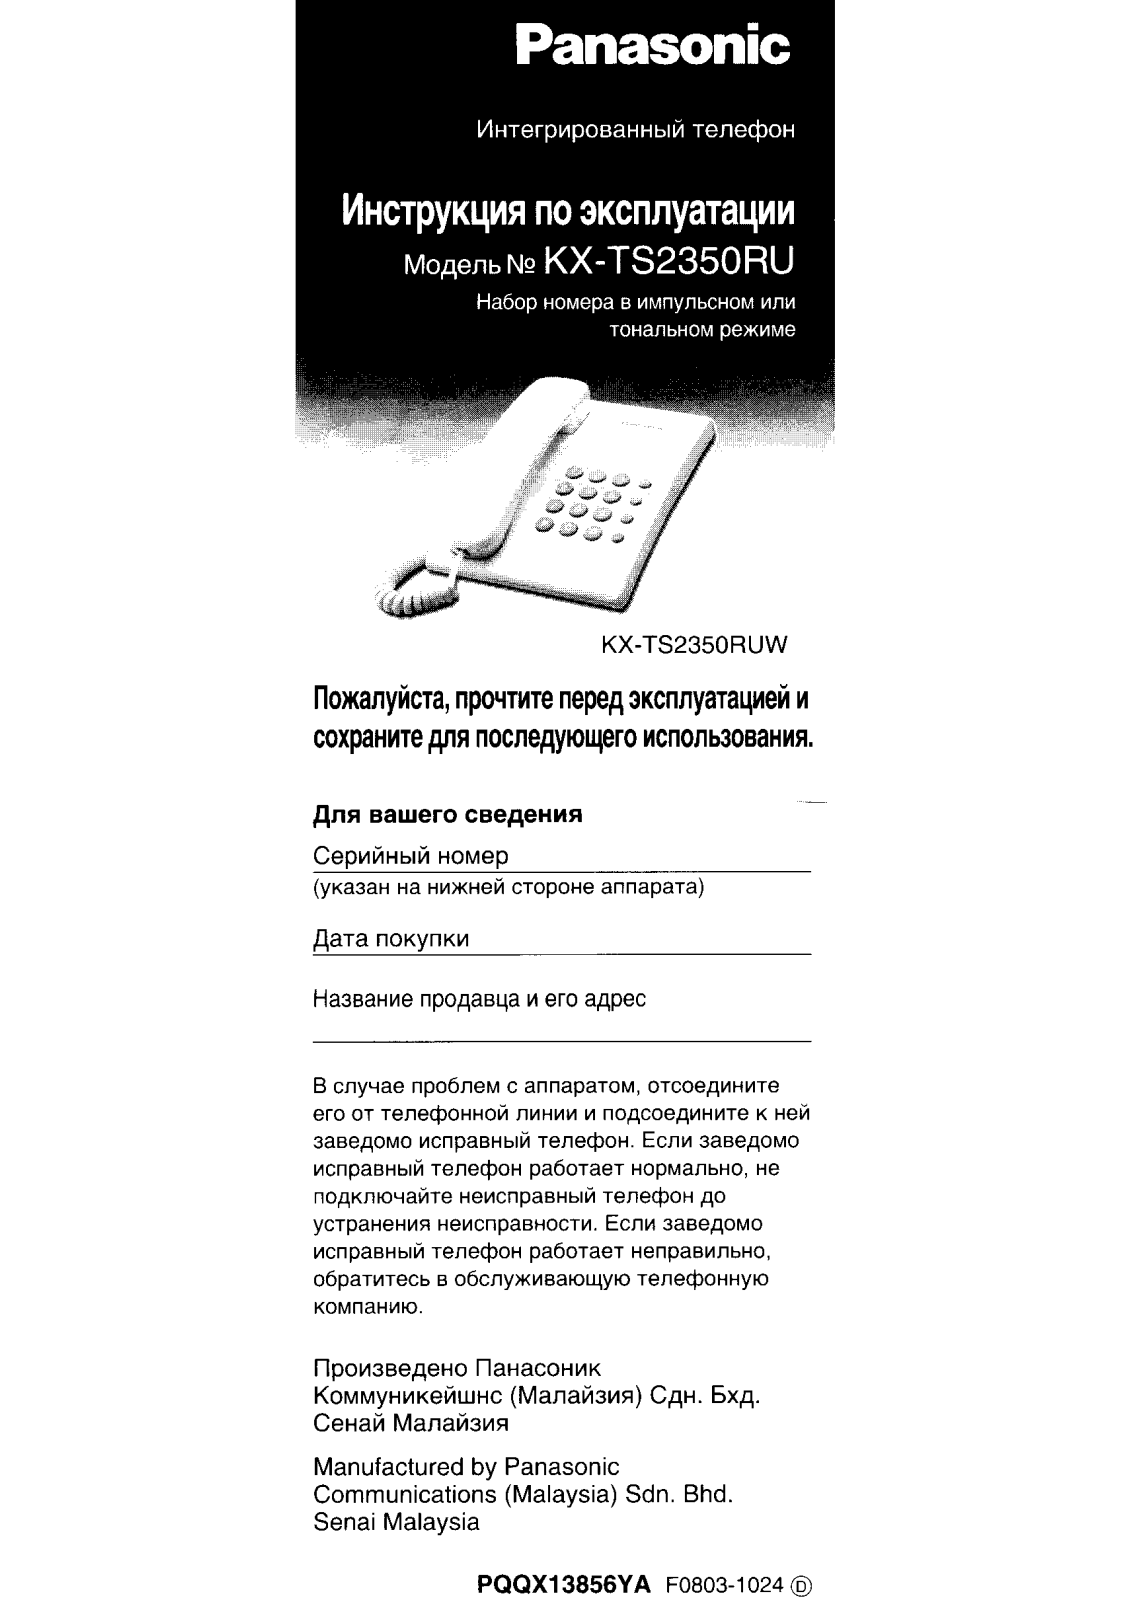 Panasonic KX-TS2350RUJ User Manual